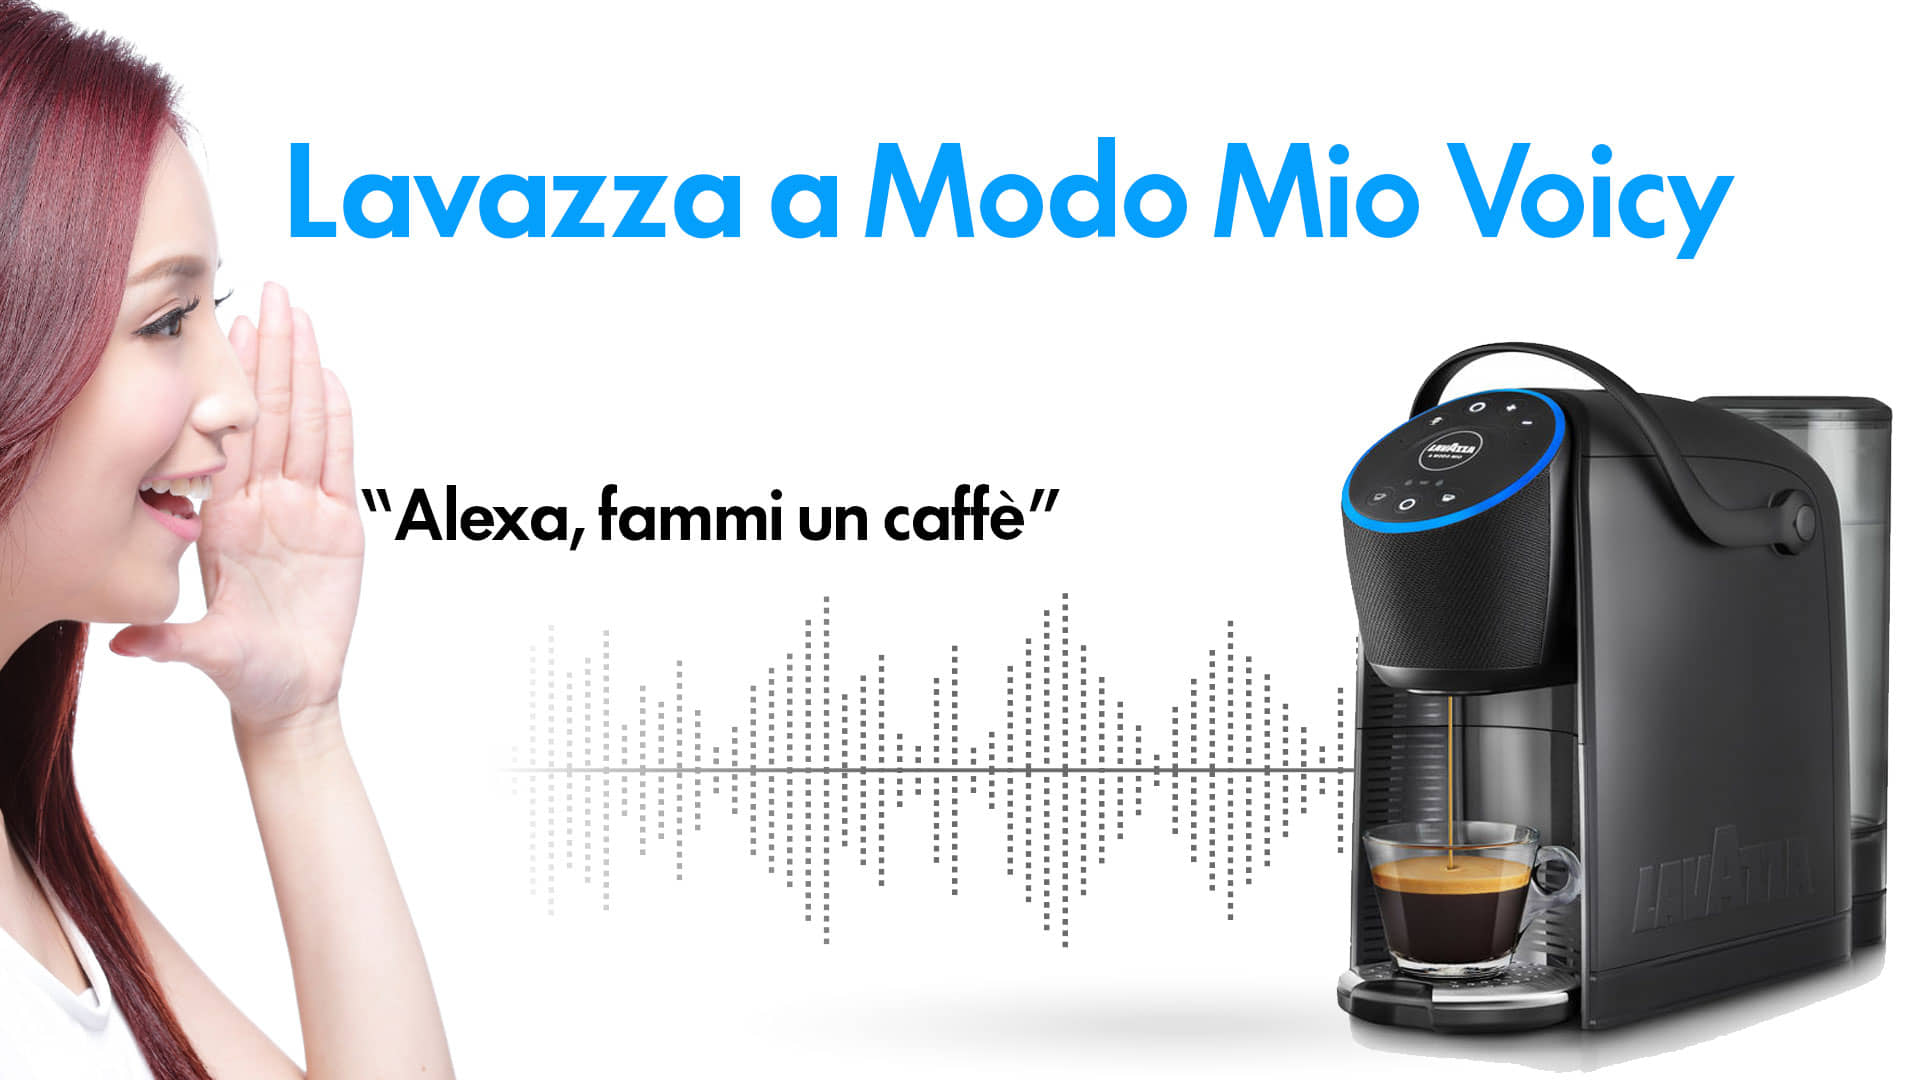 Lavazza a Modo Mio Voicy con Alexa: caffè e streaming insieme